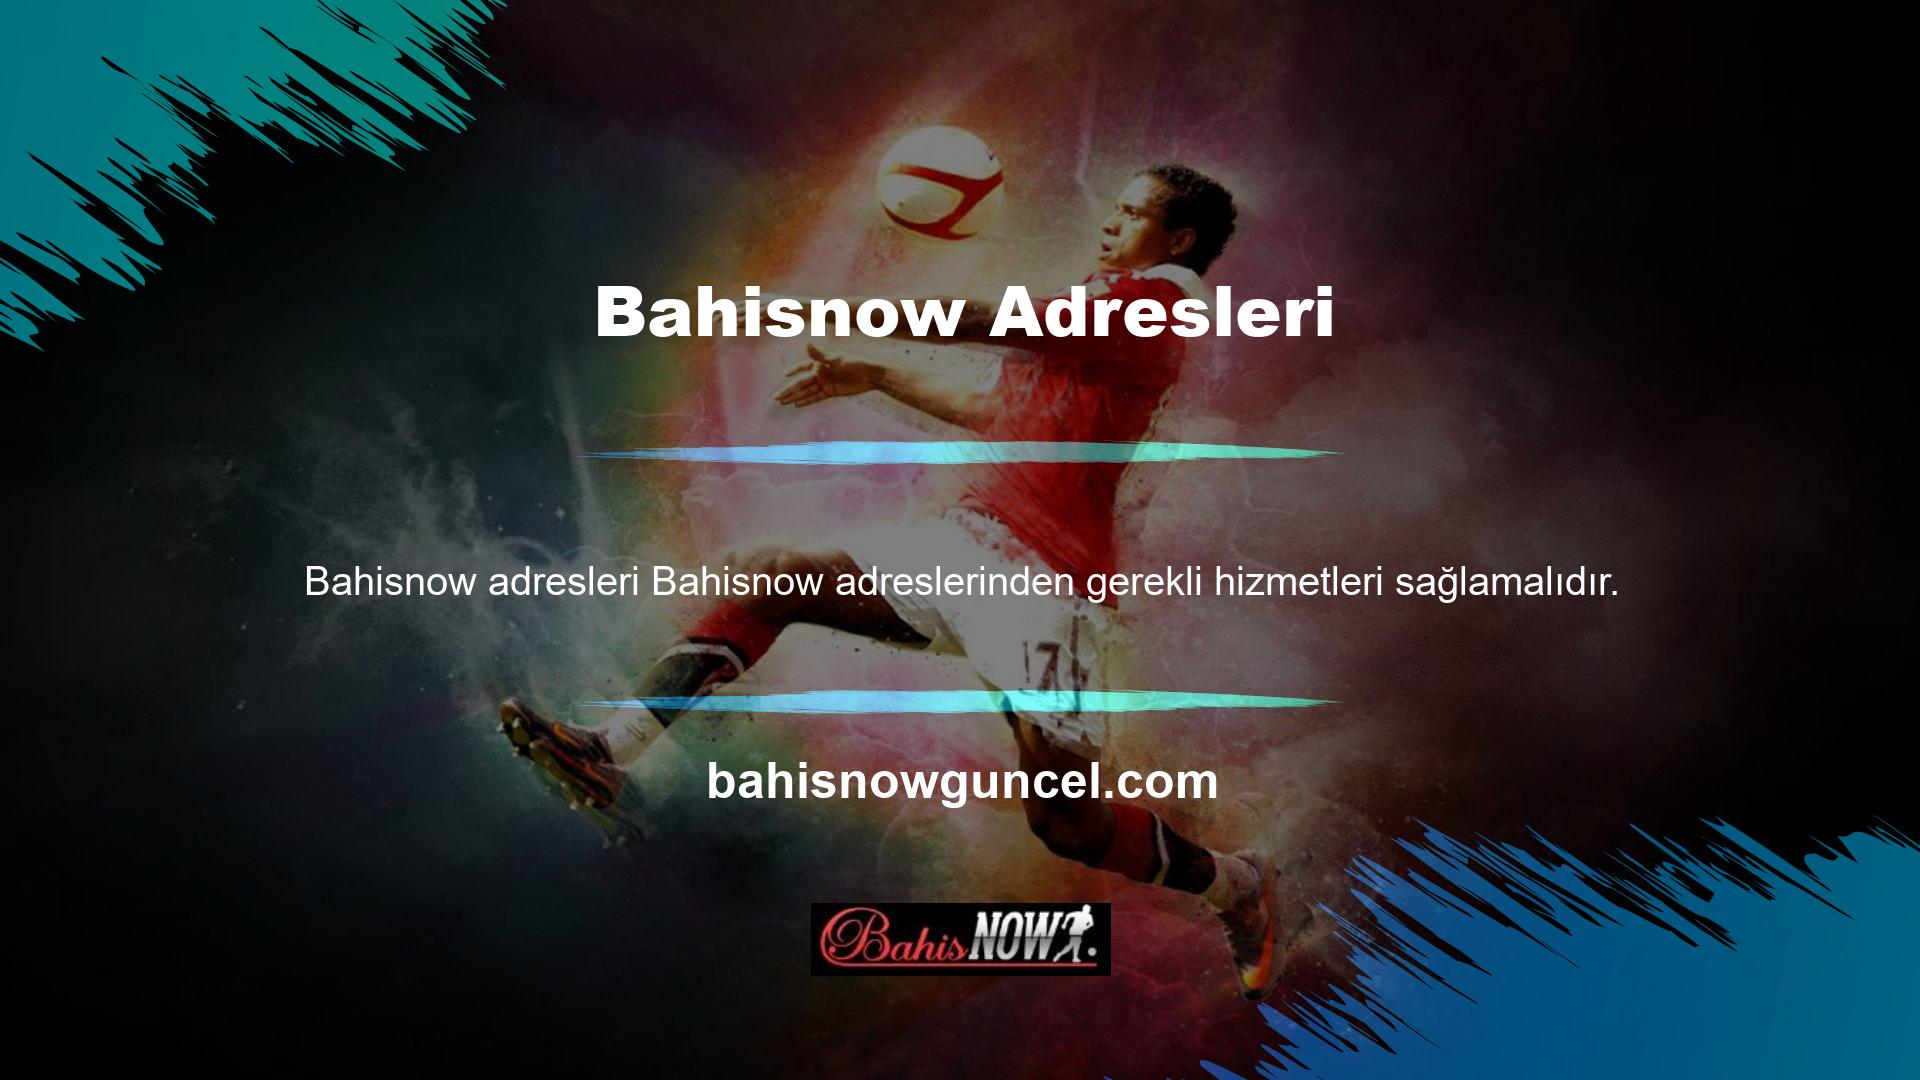 Bildiğiniz gibi Bahisnow ülkemizin en popüler bahis sitelerinden biri ve oyuncuların favori bölümlerinden biridir